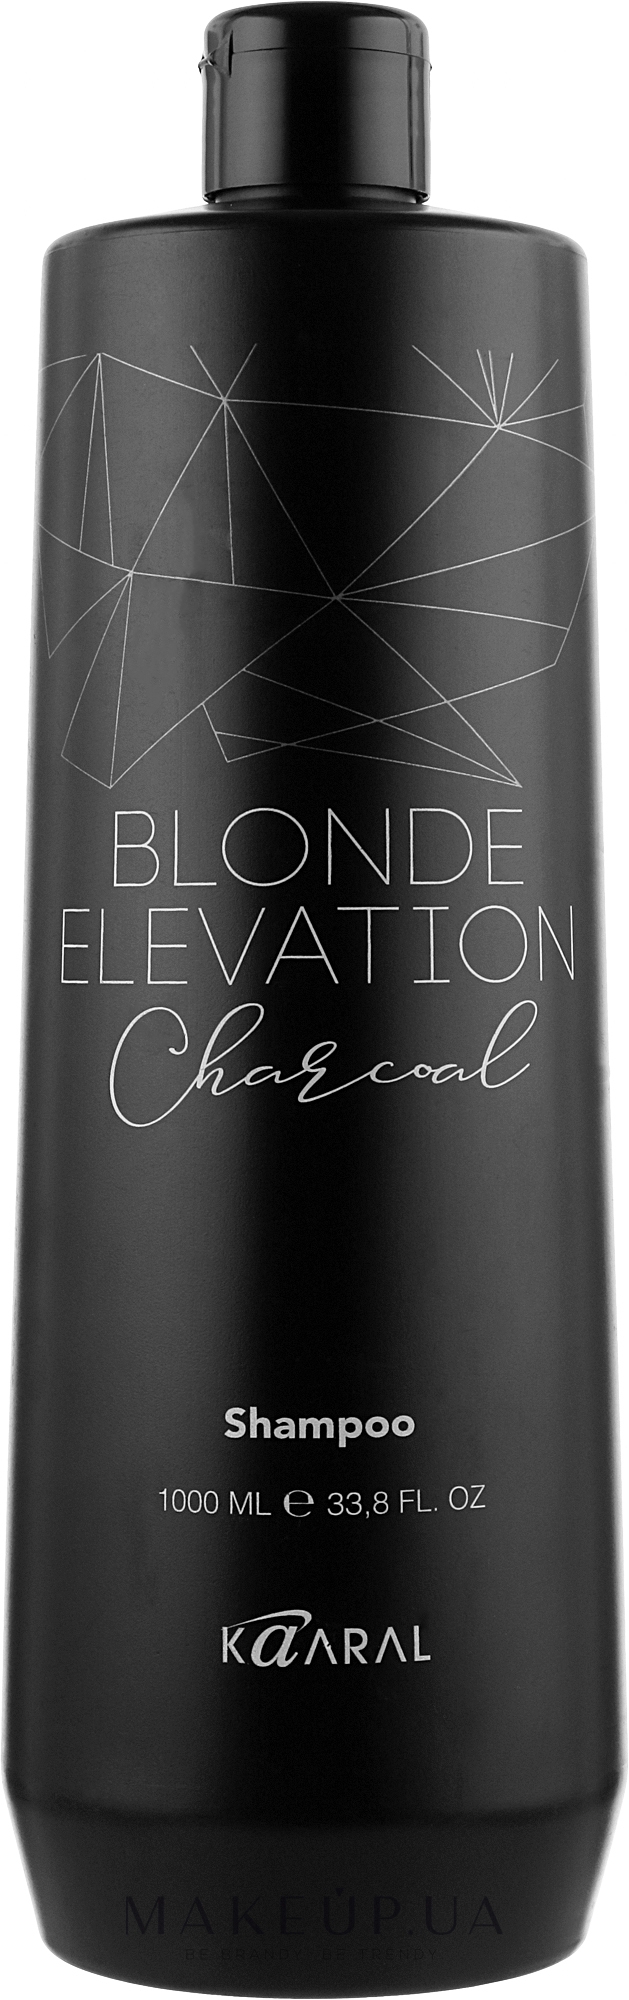 Черный угольный тонирующий шампунь для волос - Kaaral Blonde Elevation Charcoal Shampoo — фото 1000ml